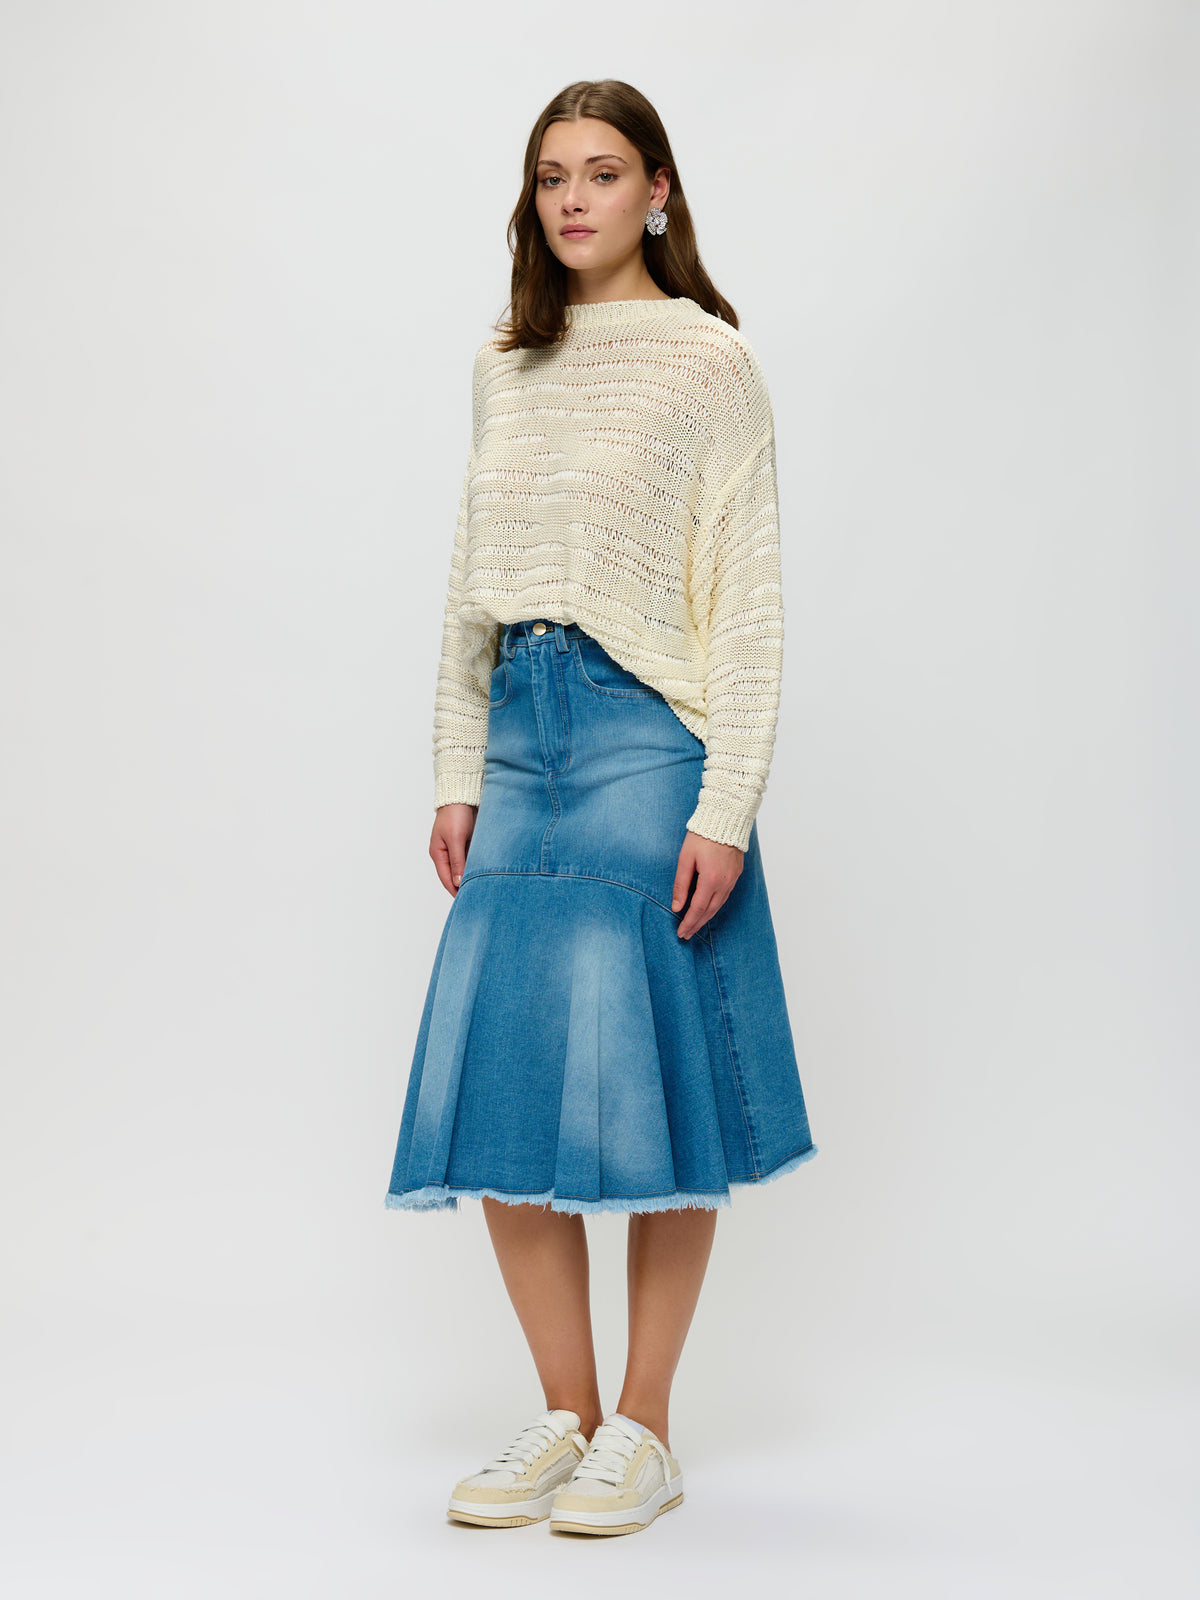 Western-Inspired Denim Skirt